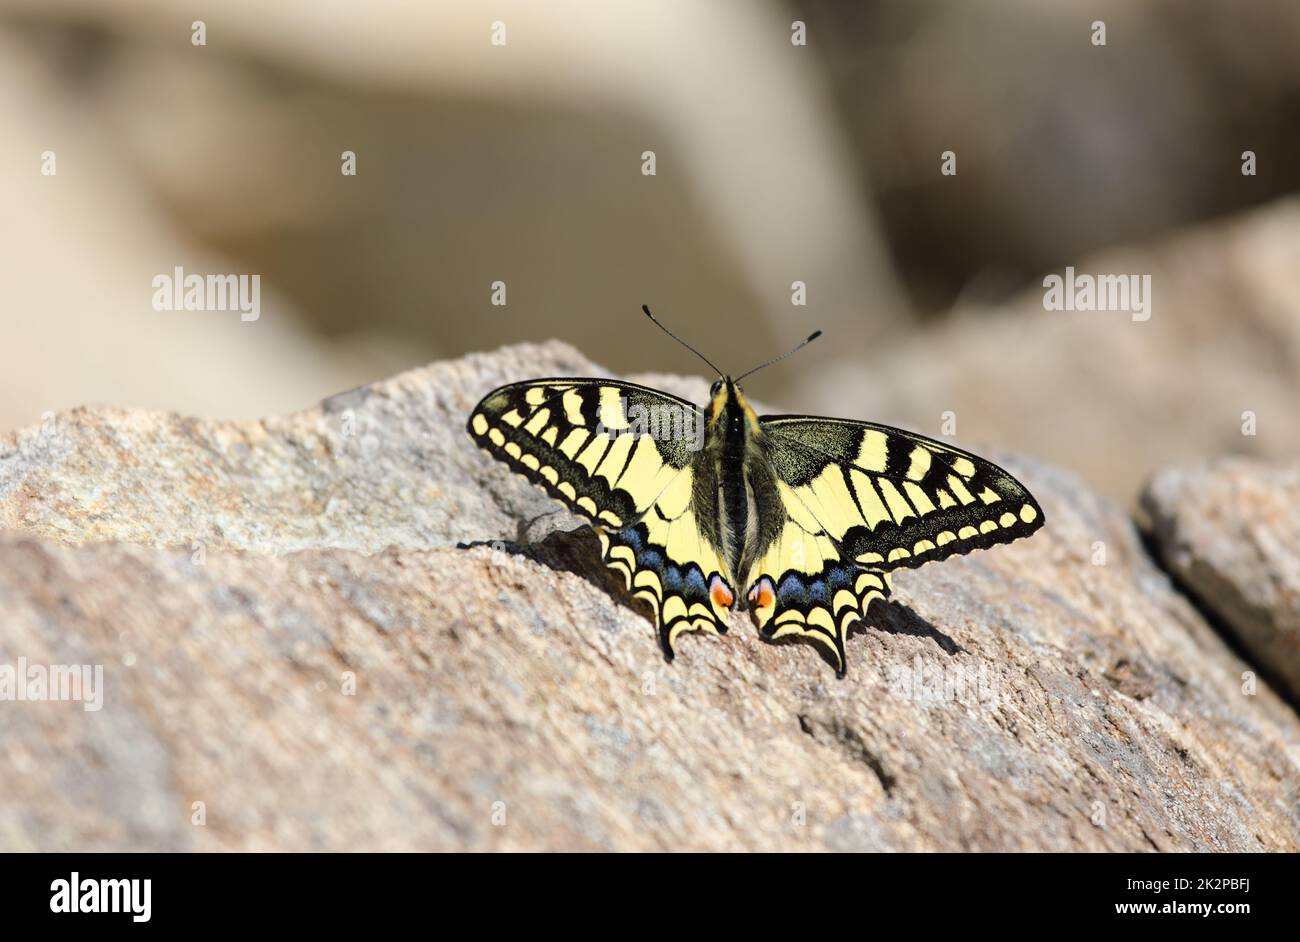 Una farfalla di coda di rondine del Vecchio mondo - Papilio machaon, Papilionidae - poggiata su una pietra sulla cima di una montagna nelle Alpi svizzere Foto Stock